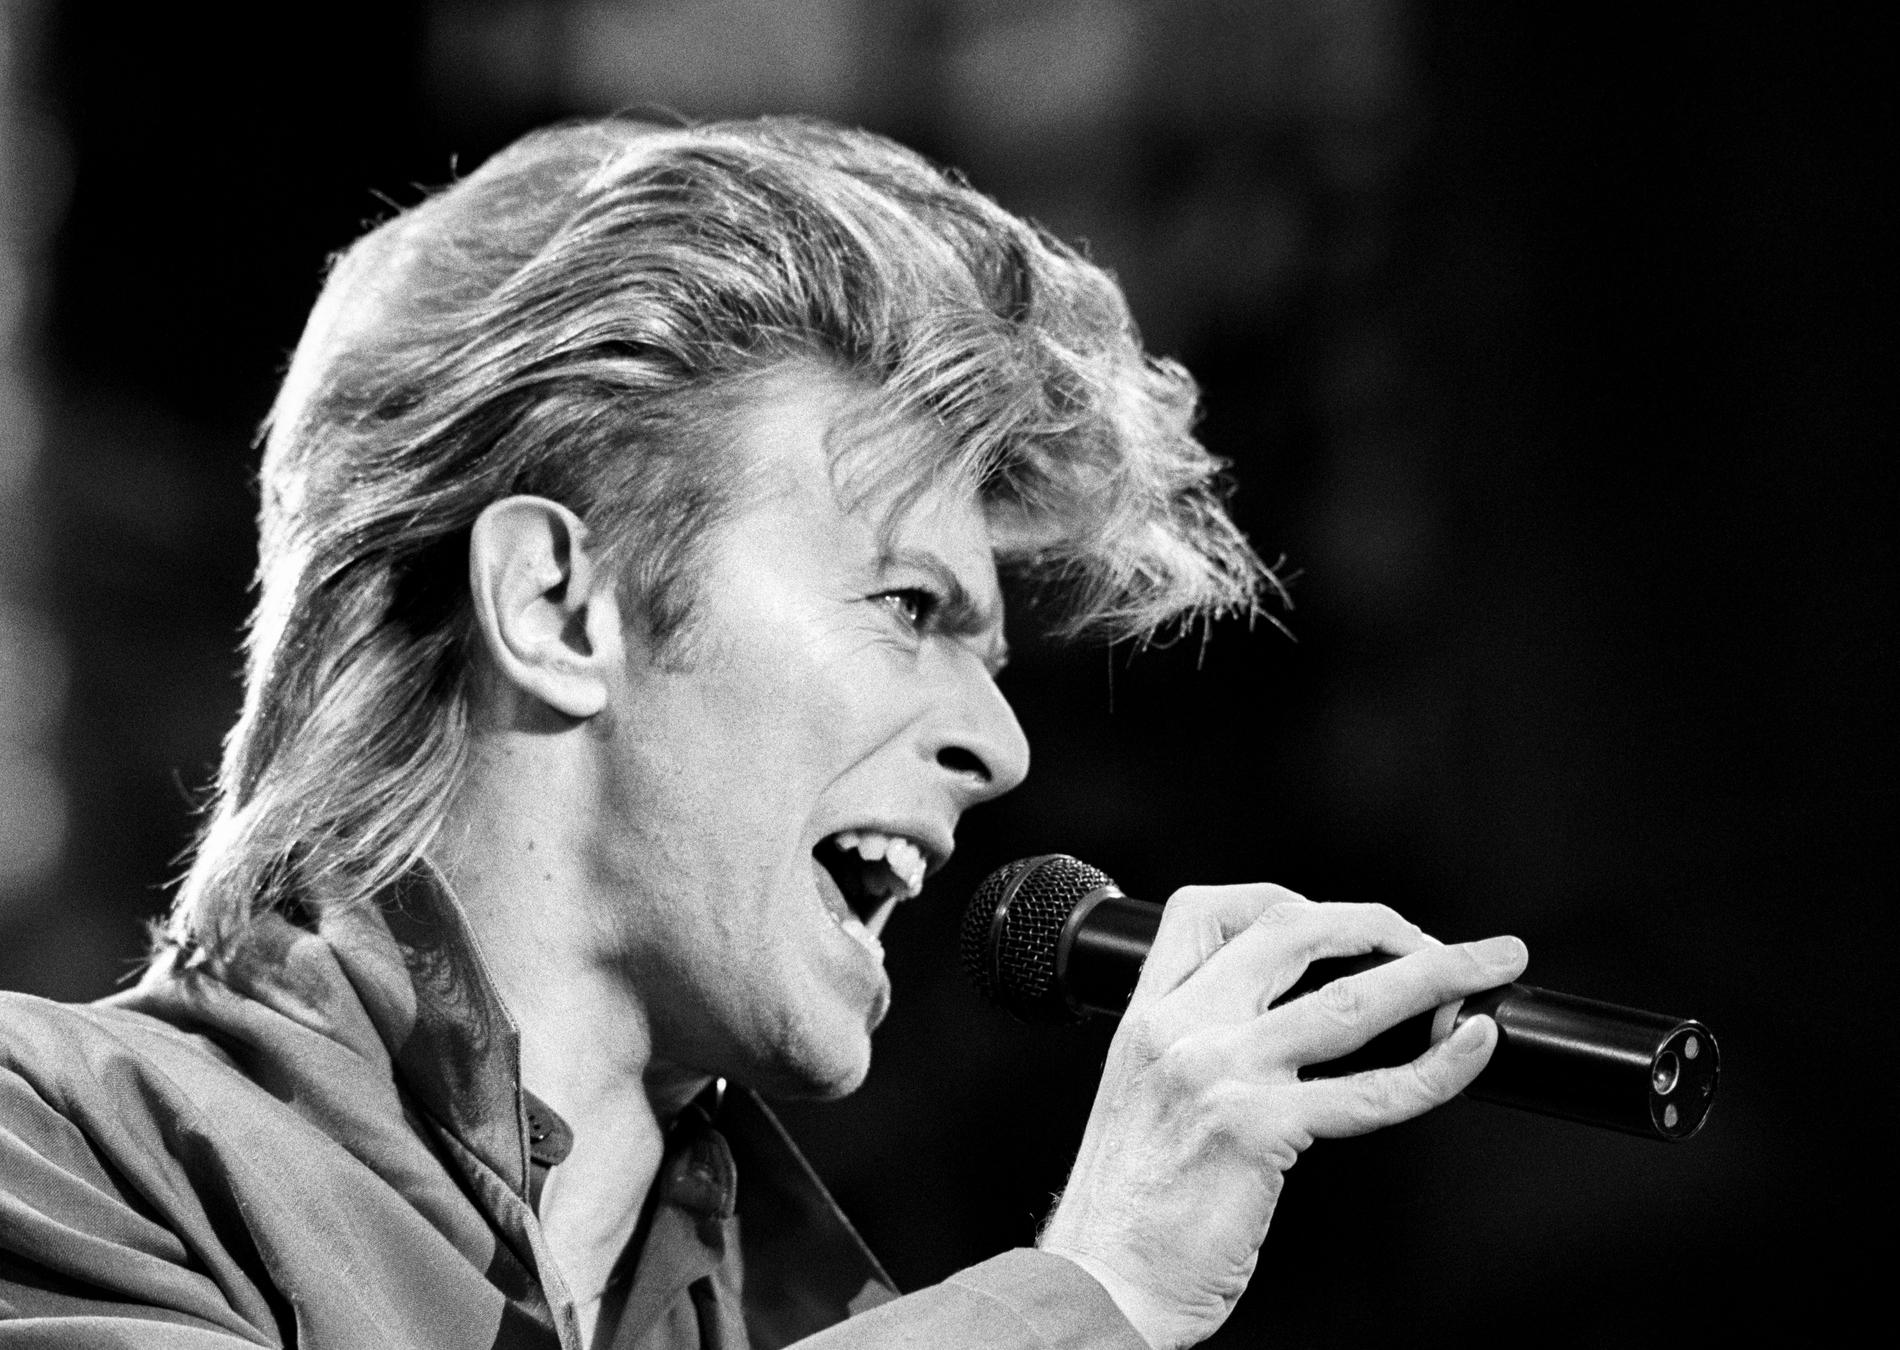 David Bowie tajmade releasen av Space oddity till månlandningen, men framgången för låten sköts upp. 